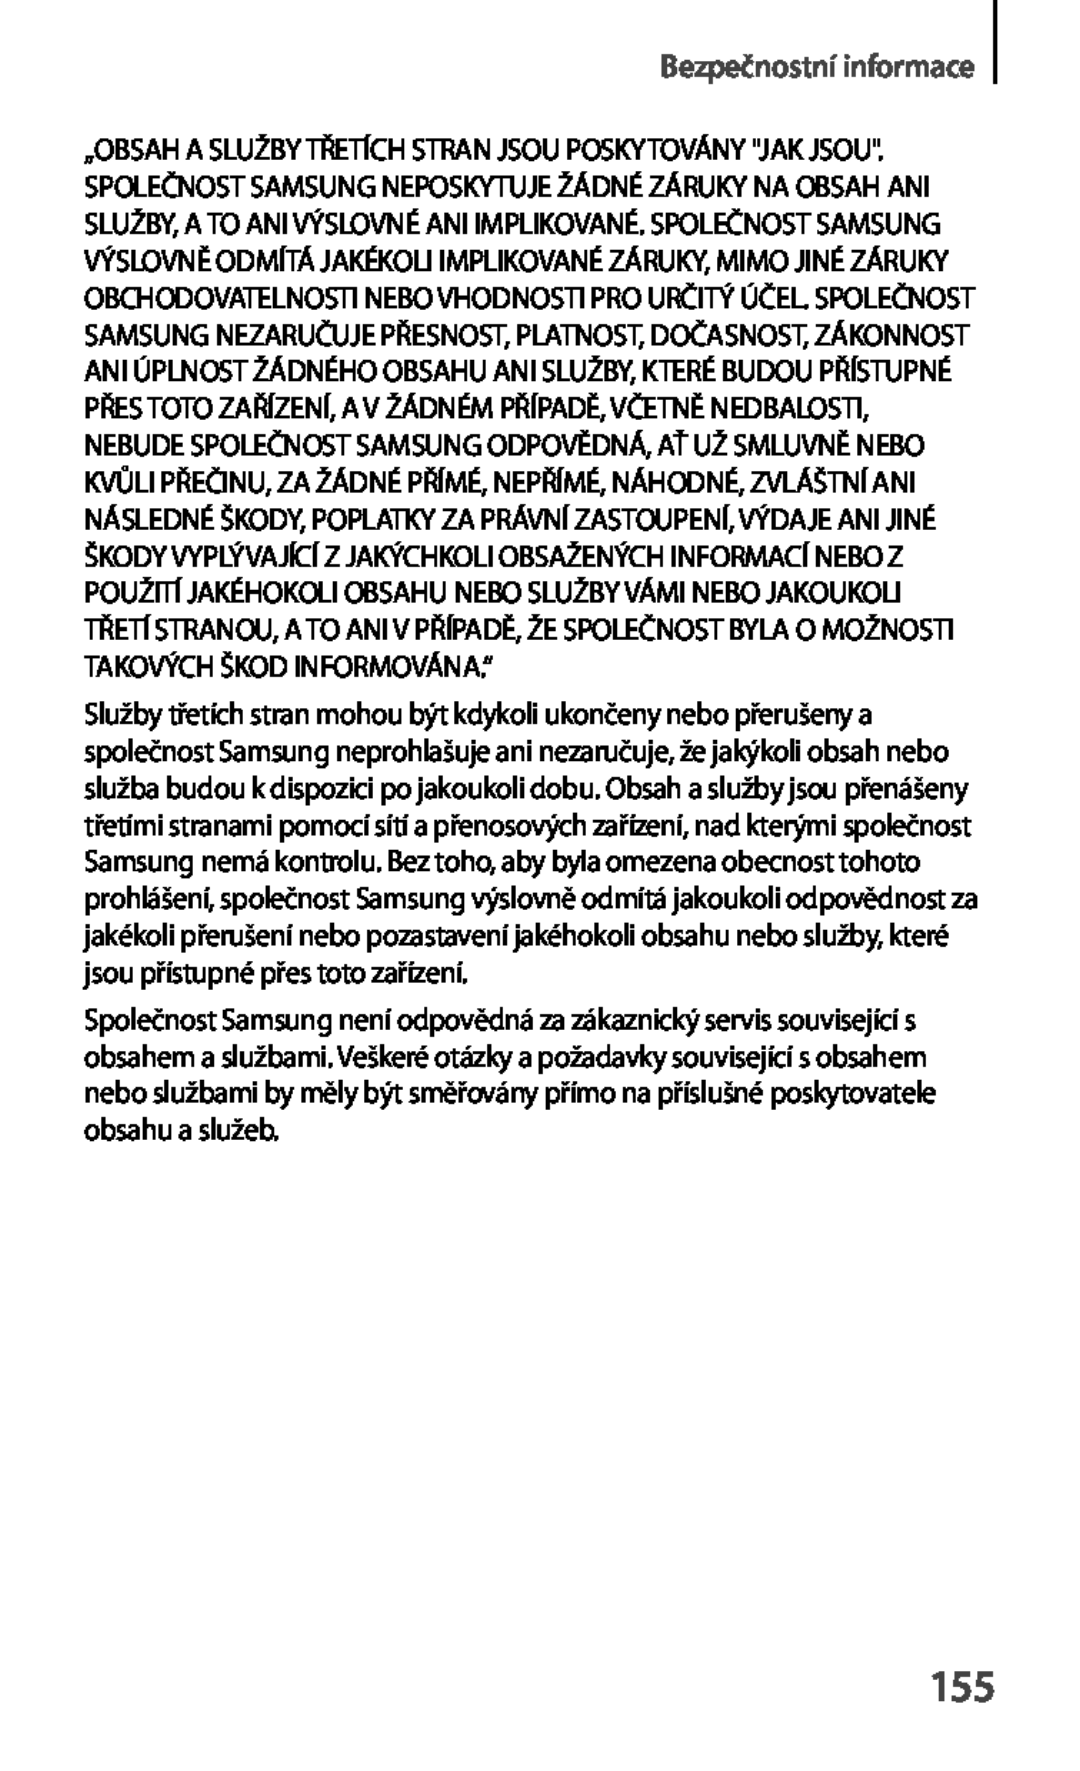 Samsung GT-S6810PWNORS manual Bezpečnostní informace, Služby třetích stran mohou být kdykoli ukončeny nebo přerušeny a 